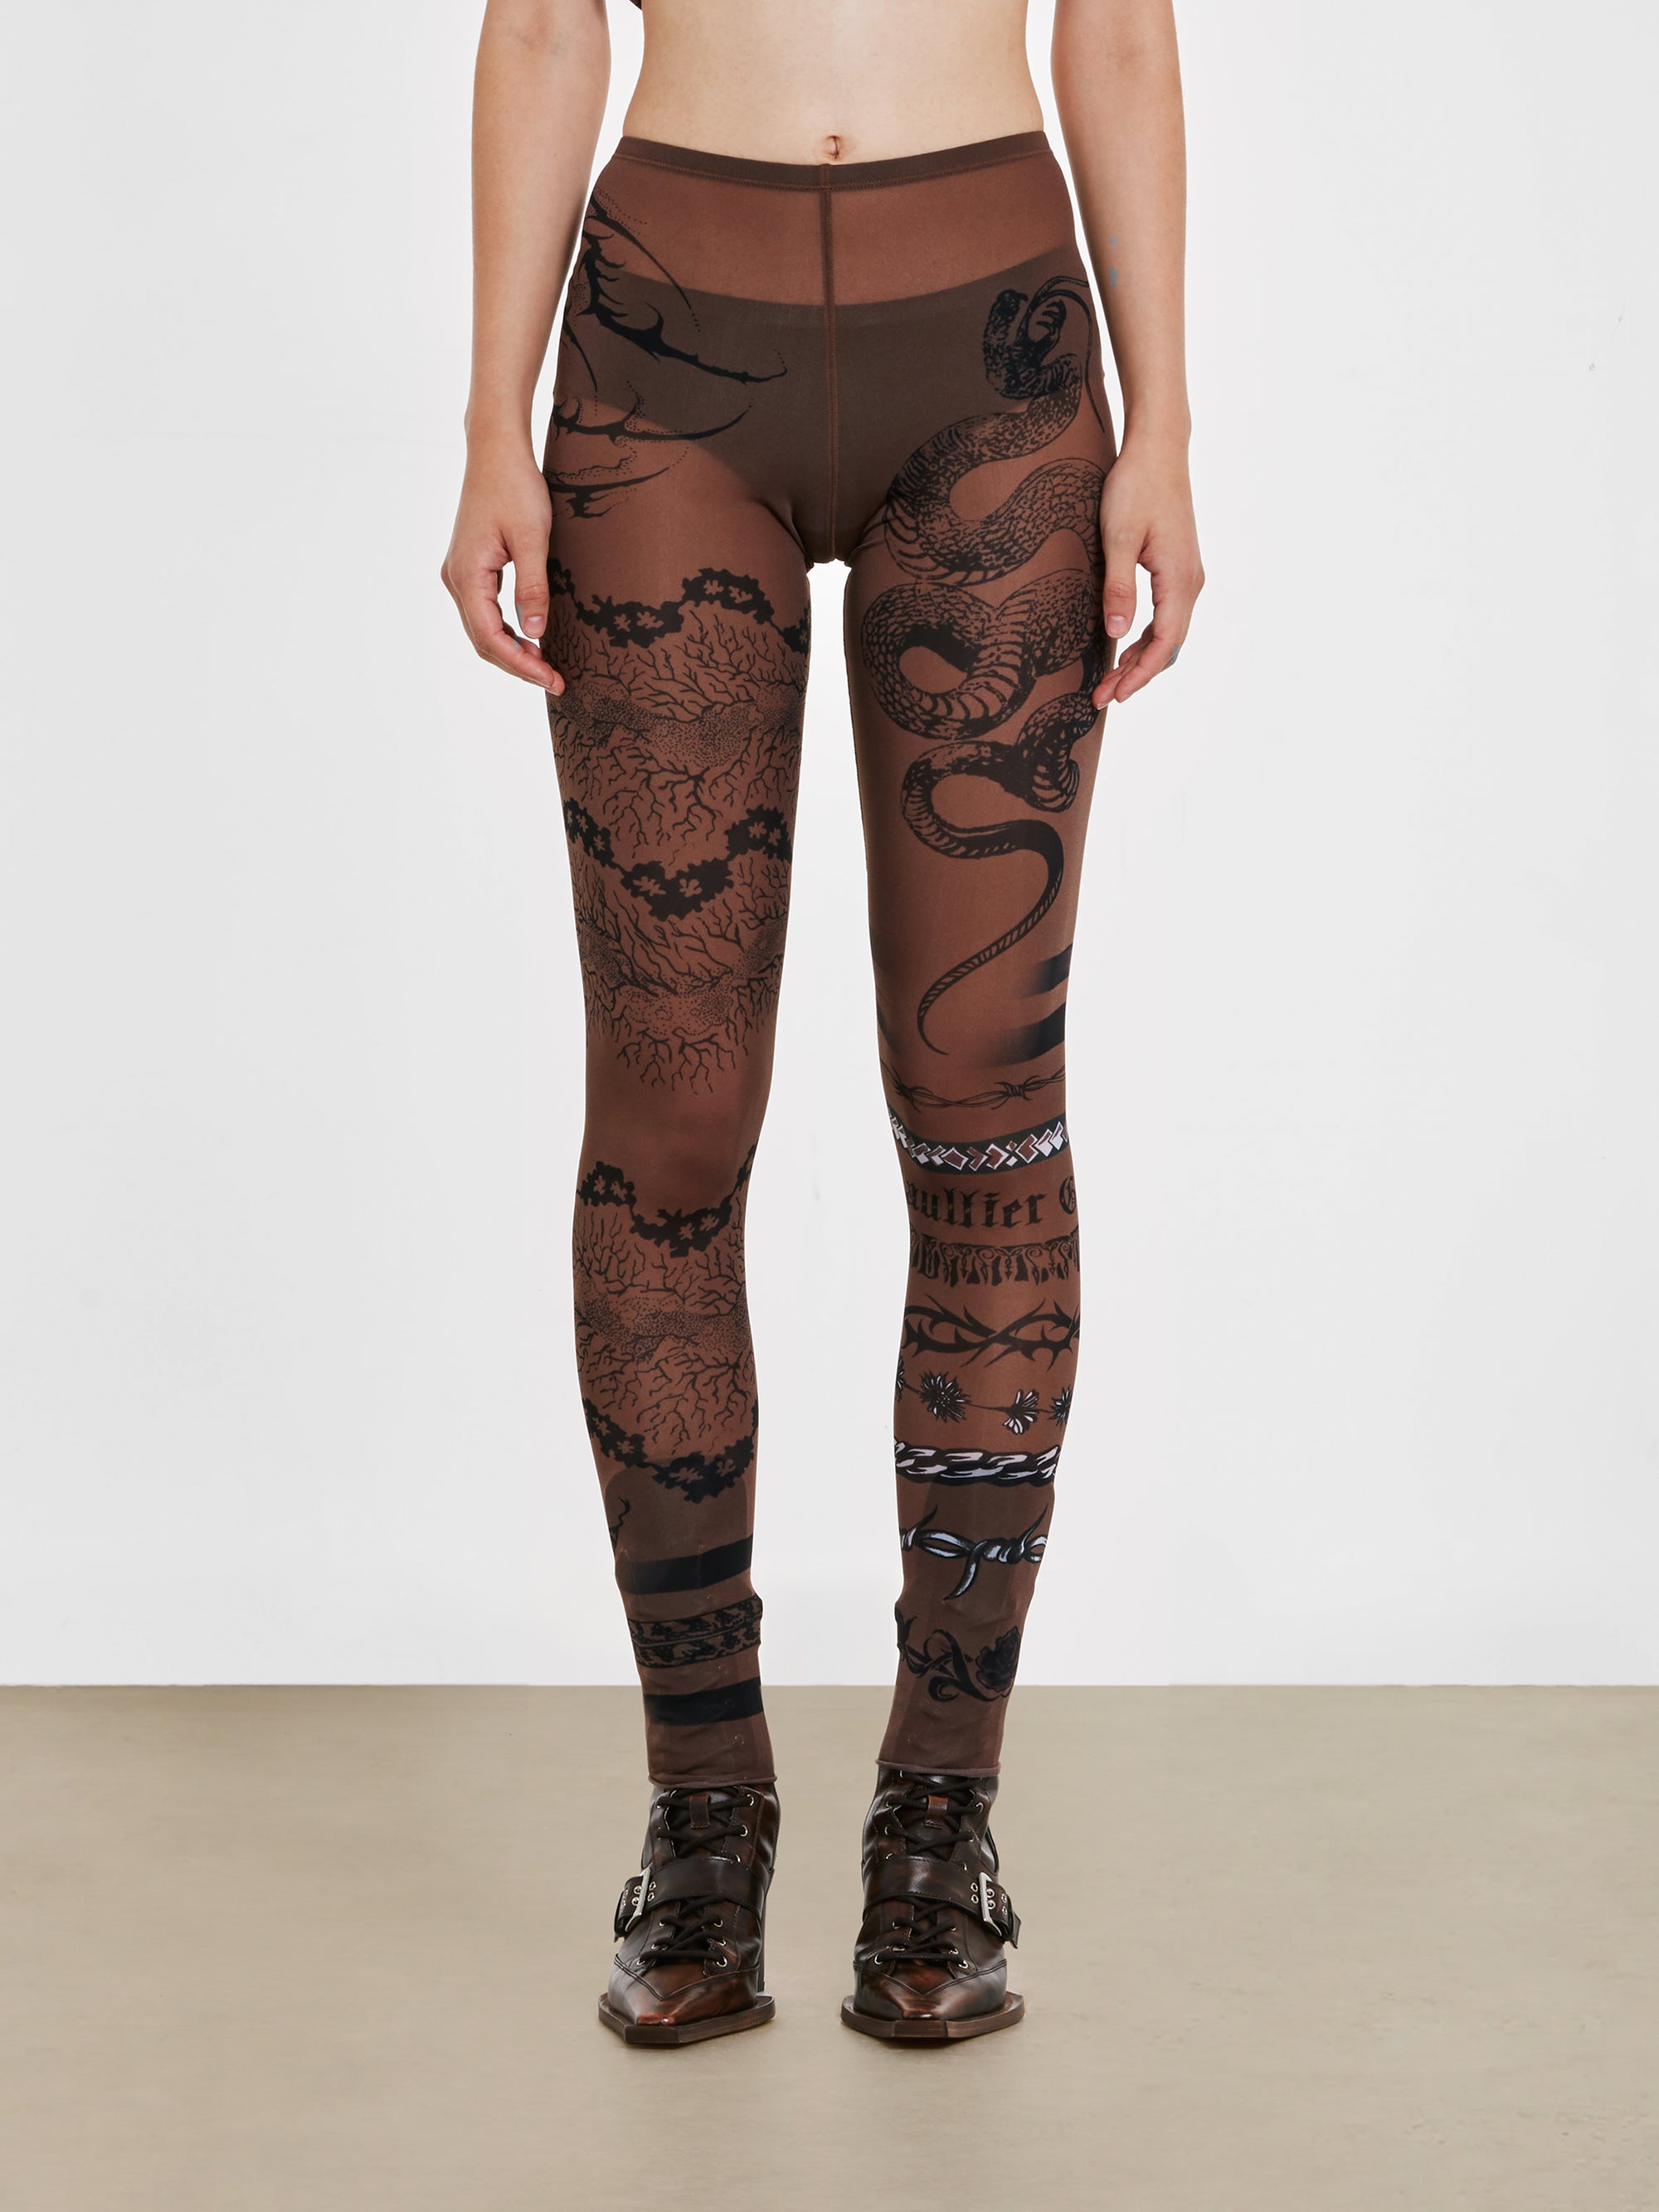 Jean Paul Gaultier - KNWLS Women’s Trompe L’Oeil Tattoo Print Leggings -  (Ebony/Grey/Black)